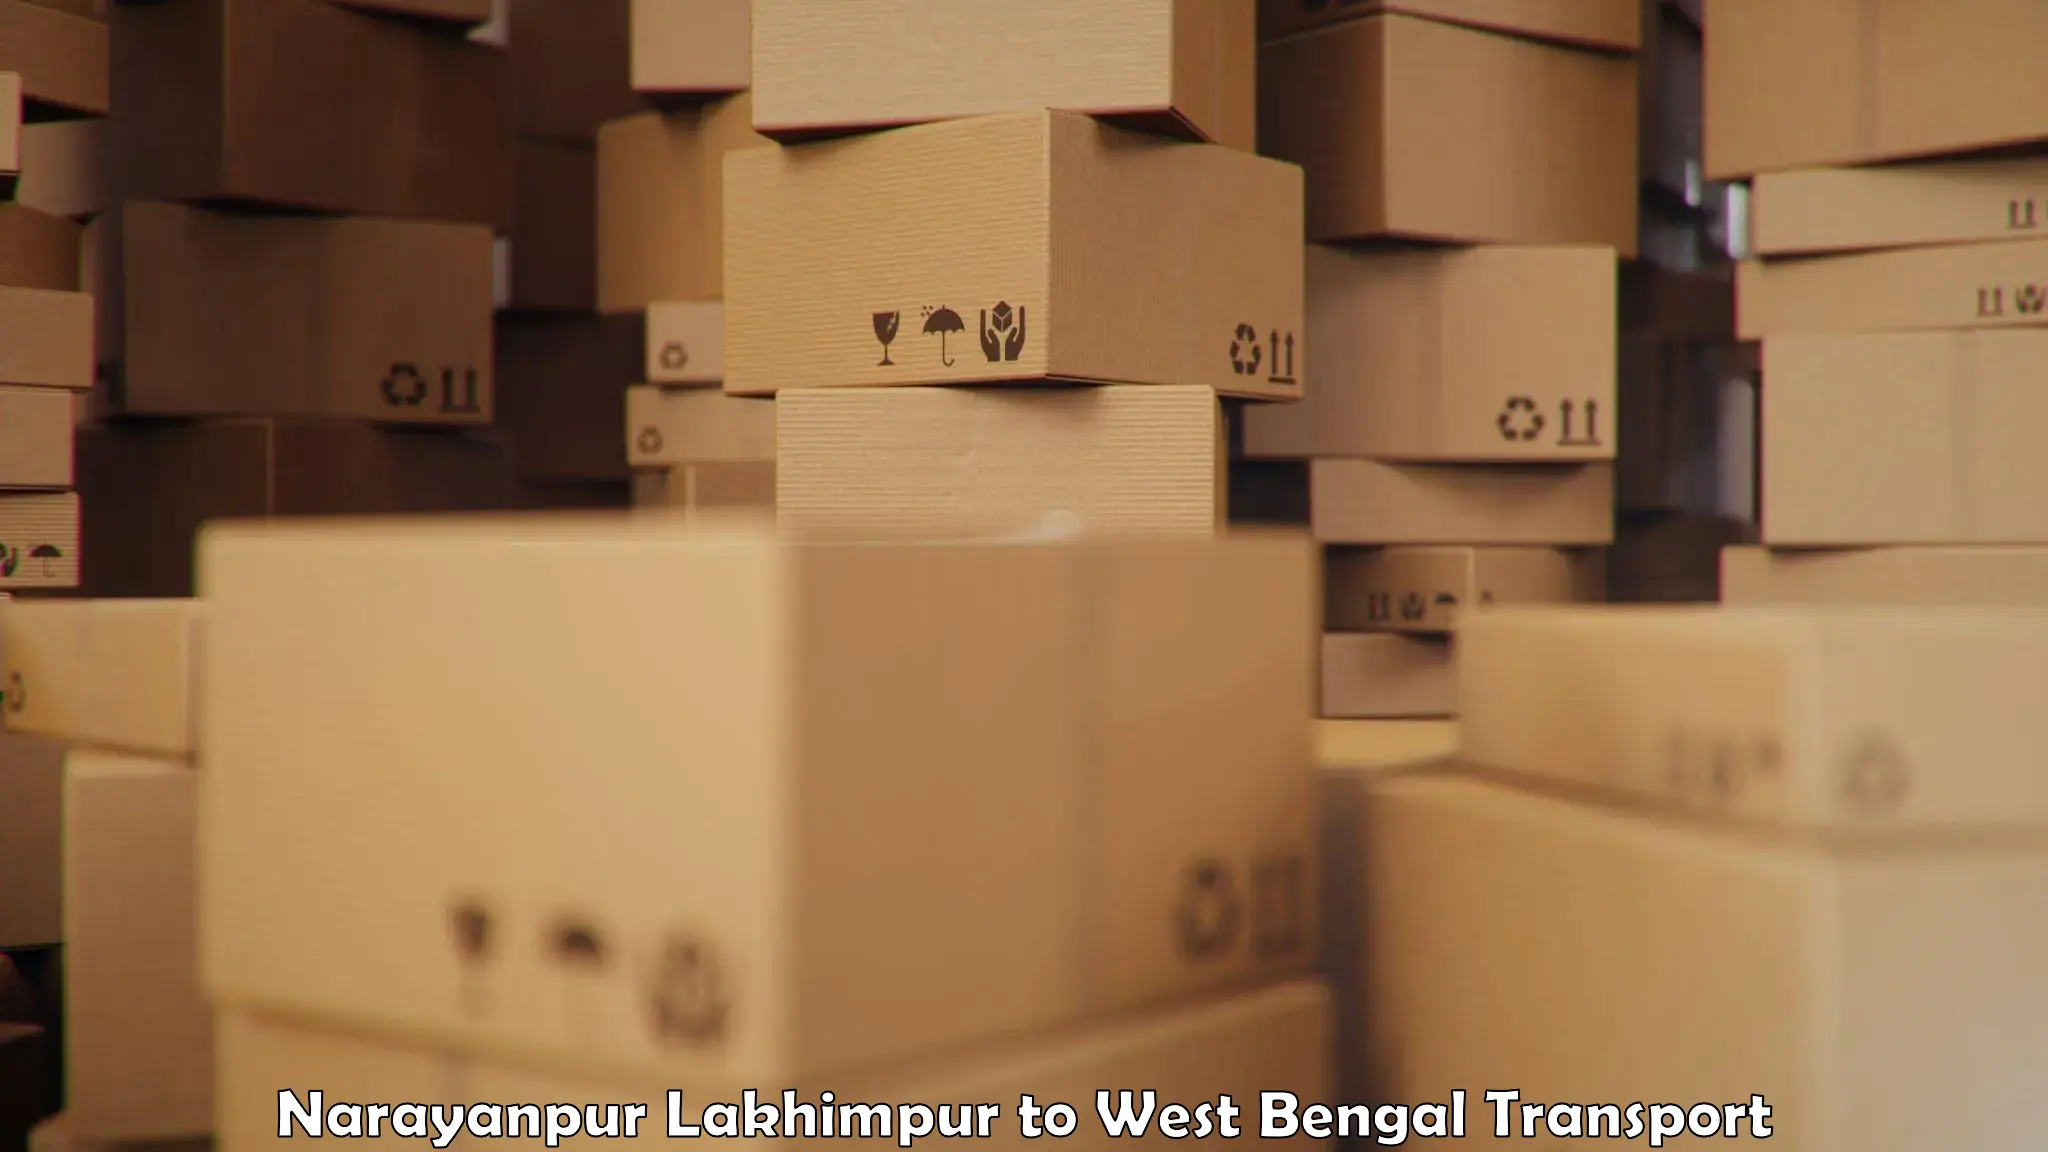 Shipping partner Narayanpur Lakhimpur to NIT Durgapur